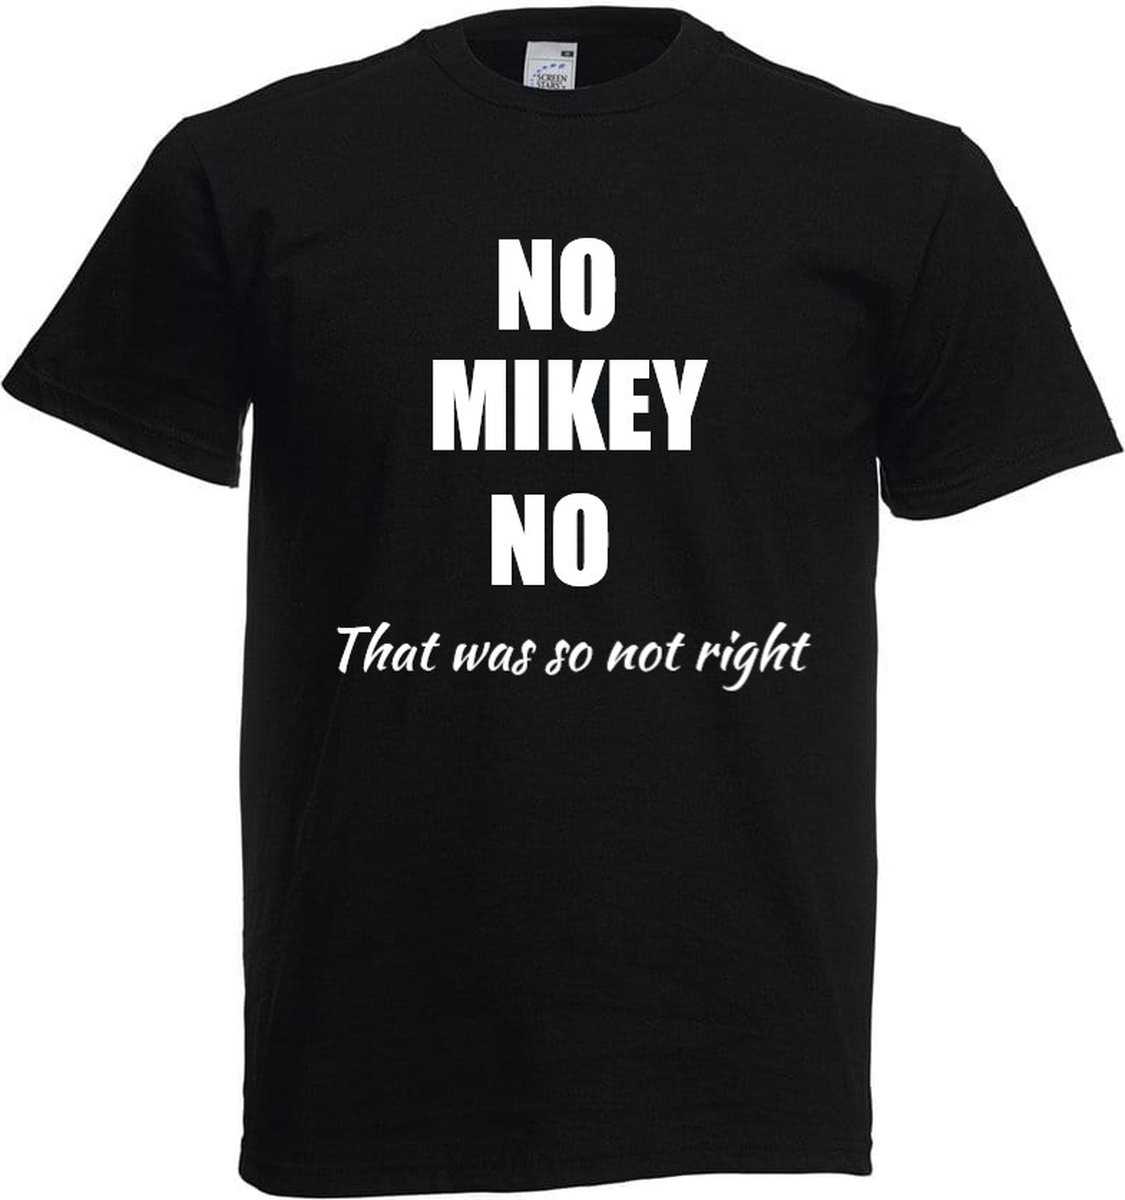 Het kadoshoppie - Maat S - T-shirt No Mikey No - Formule 1 - F1 - Max Verstappen - Hamilton - Toto wolff - 33 - 1 - wereldkampioen